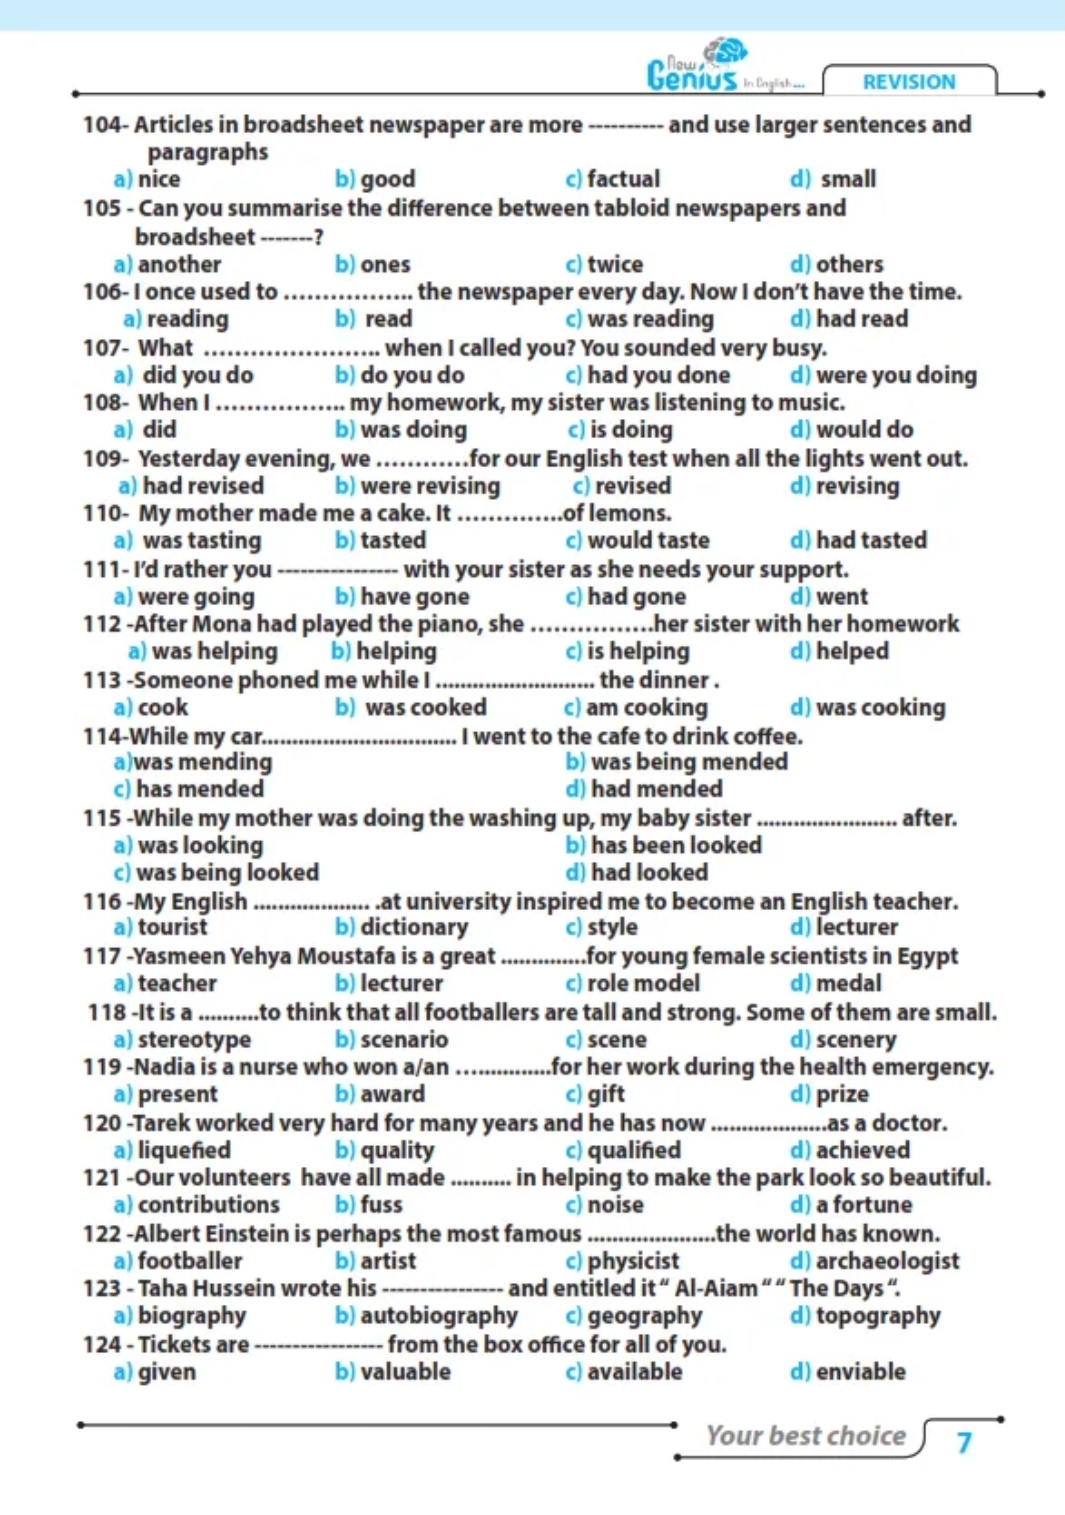 ٢٥٠ سؤال انجليزي للثانوية العامة والأزهرية - new genius